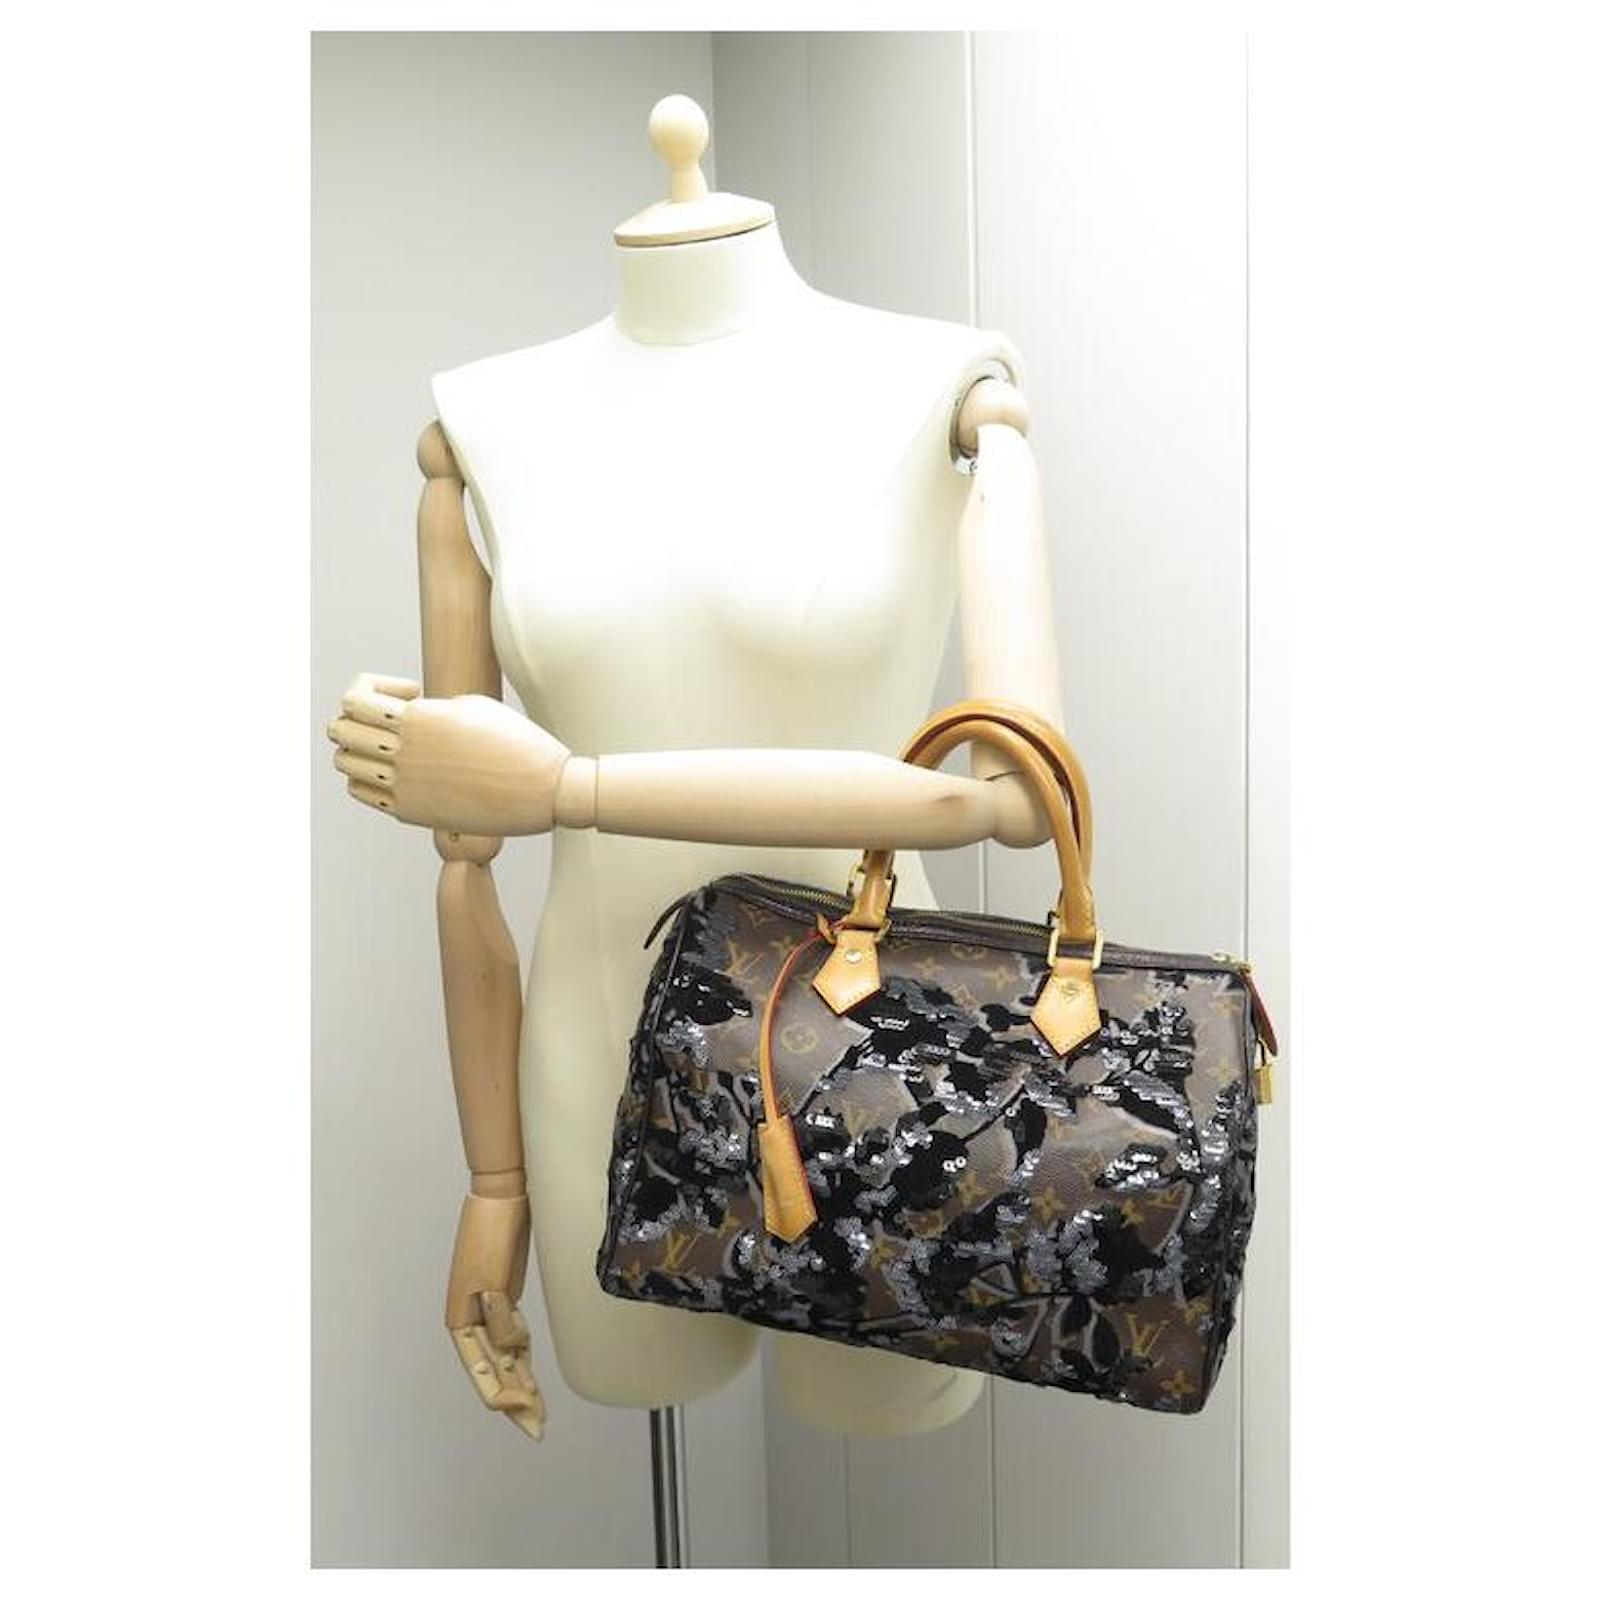 Louis Vuitton Speedy Handbag 30 JET FLOWER MONOGRAM M40436 SEQUIN